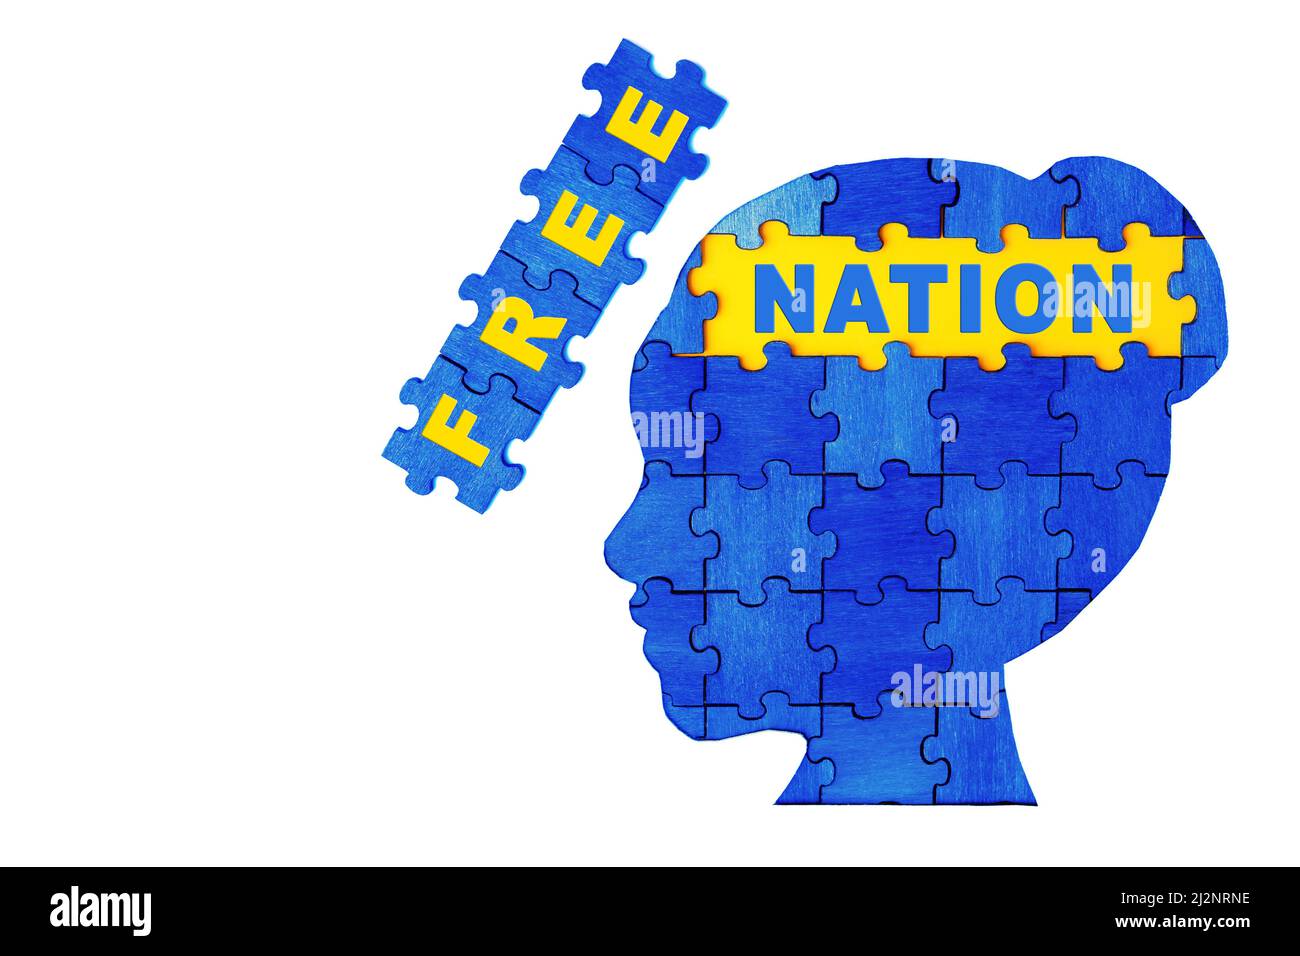 Nation LIBRE de texte à l'intérieur d'une femme profil de tête en bois puzzle pièces peintes bleu et jaune. Concept patriotique. Banque D'Images